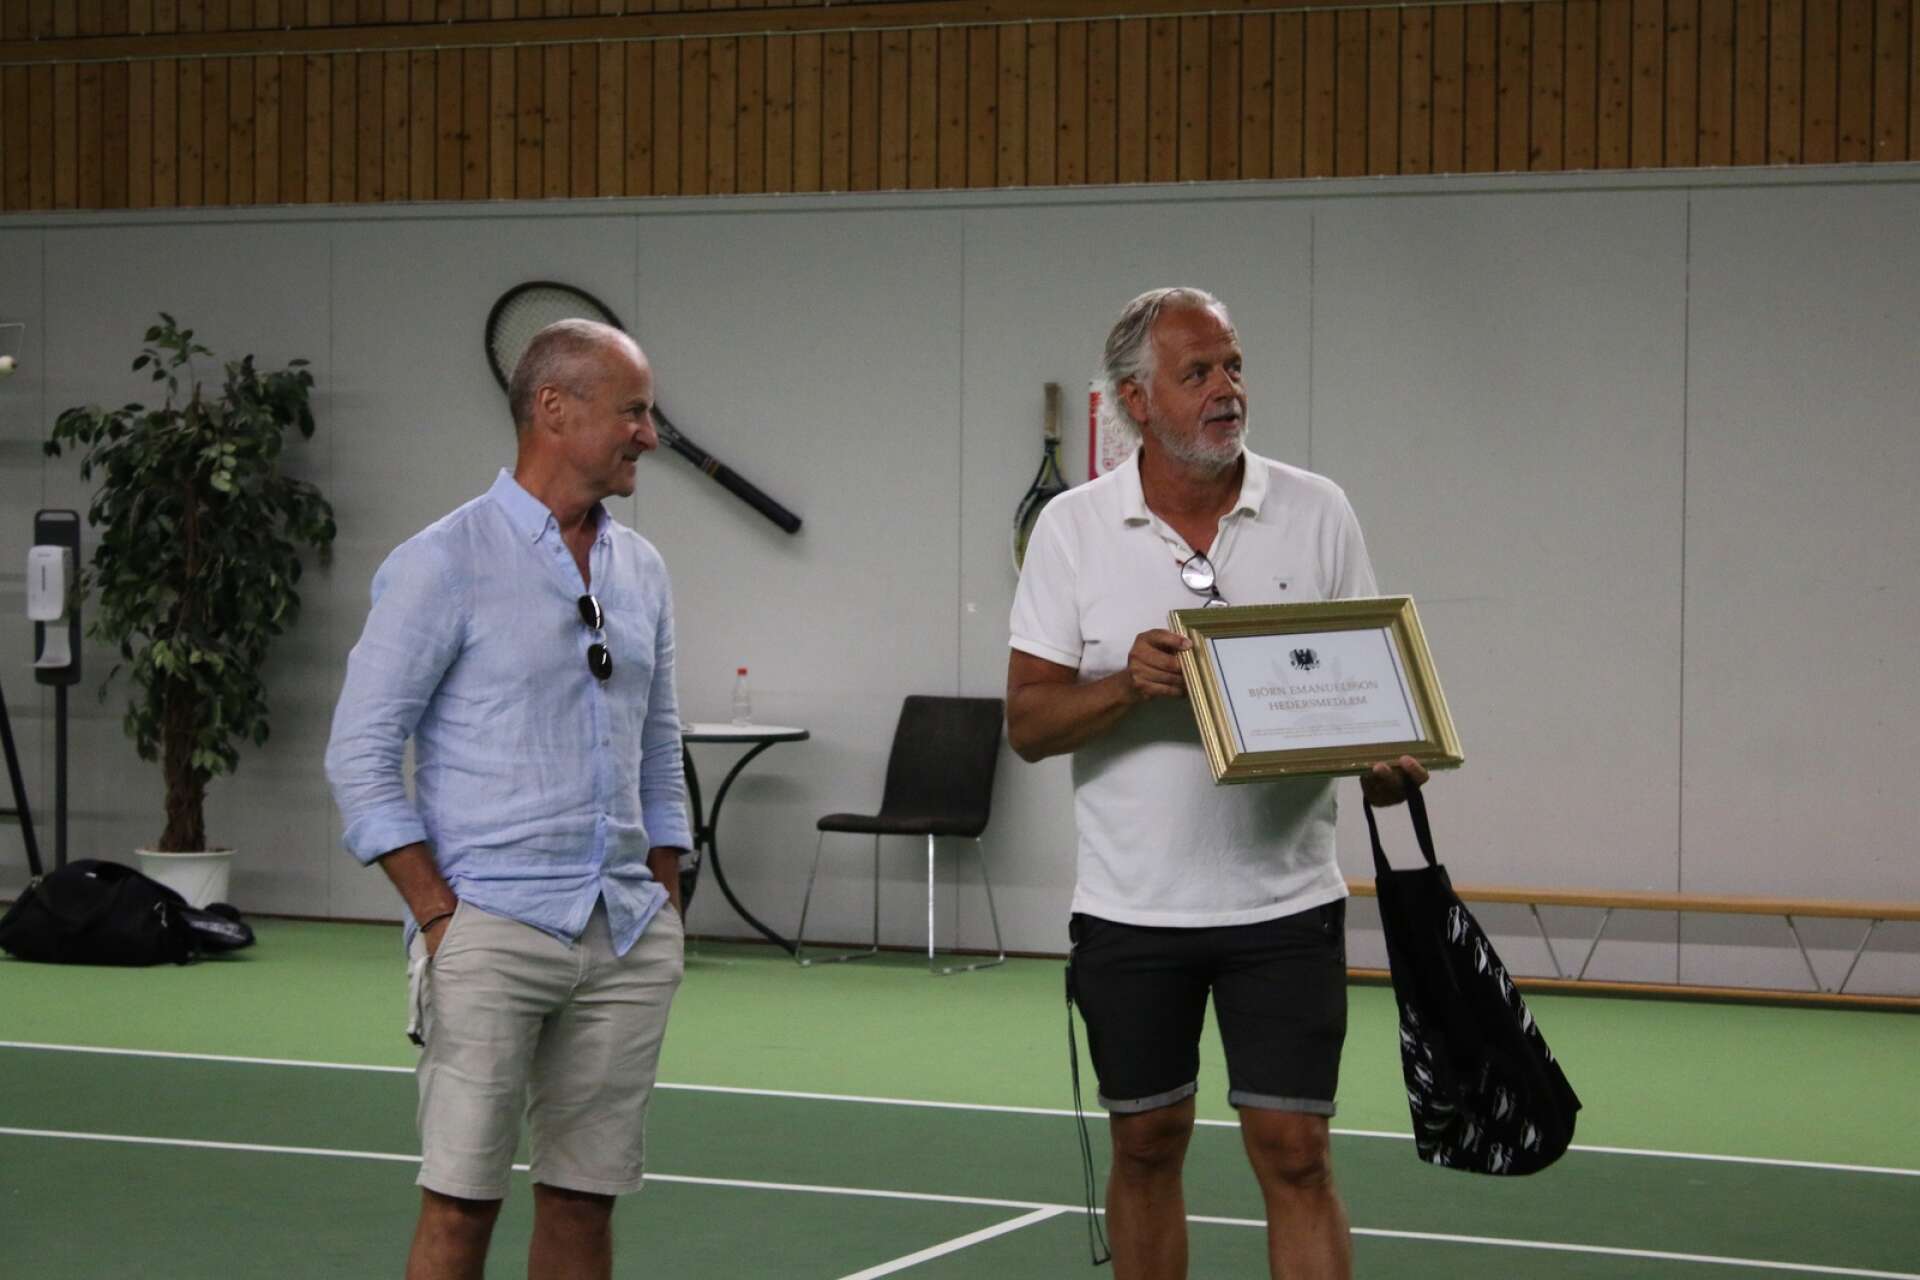 Ordförande Björn Emanuelsson utnämndes till hedersmedlem av klubben för sina stora ideella insatser i tennisklubben. Han är den första hedersmedlemmen på 100 år.